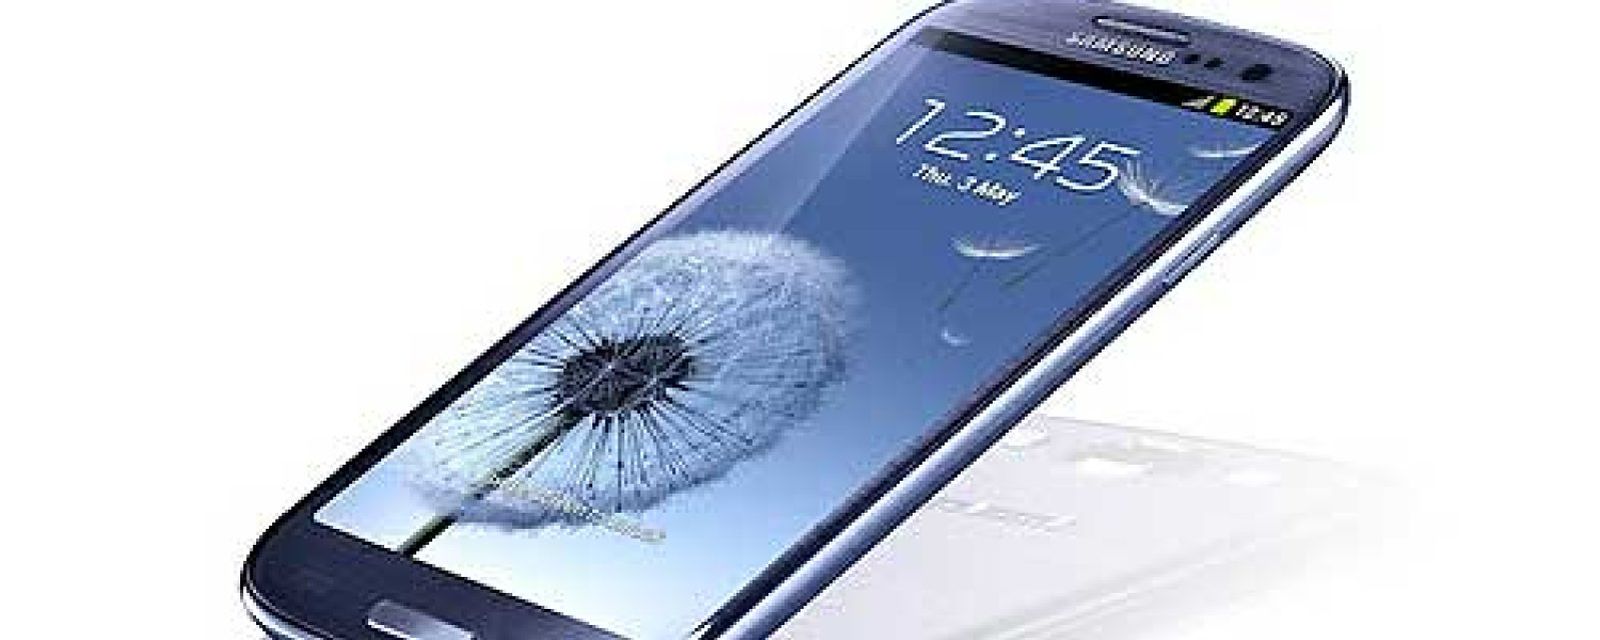 Foto: Samsung Galaxy S III, la mejor batería del mercado